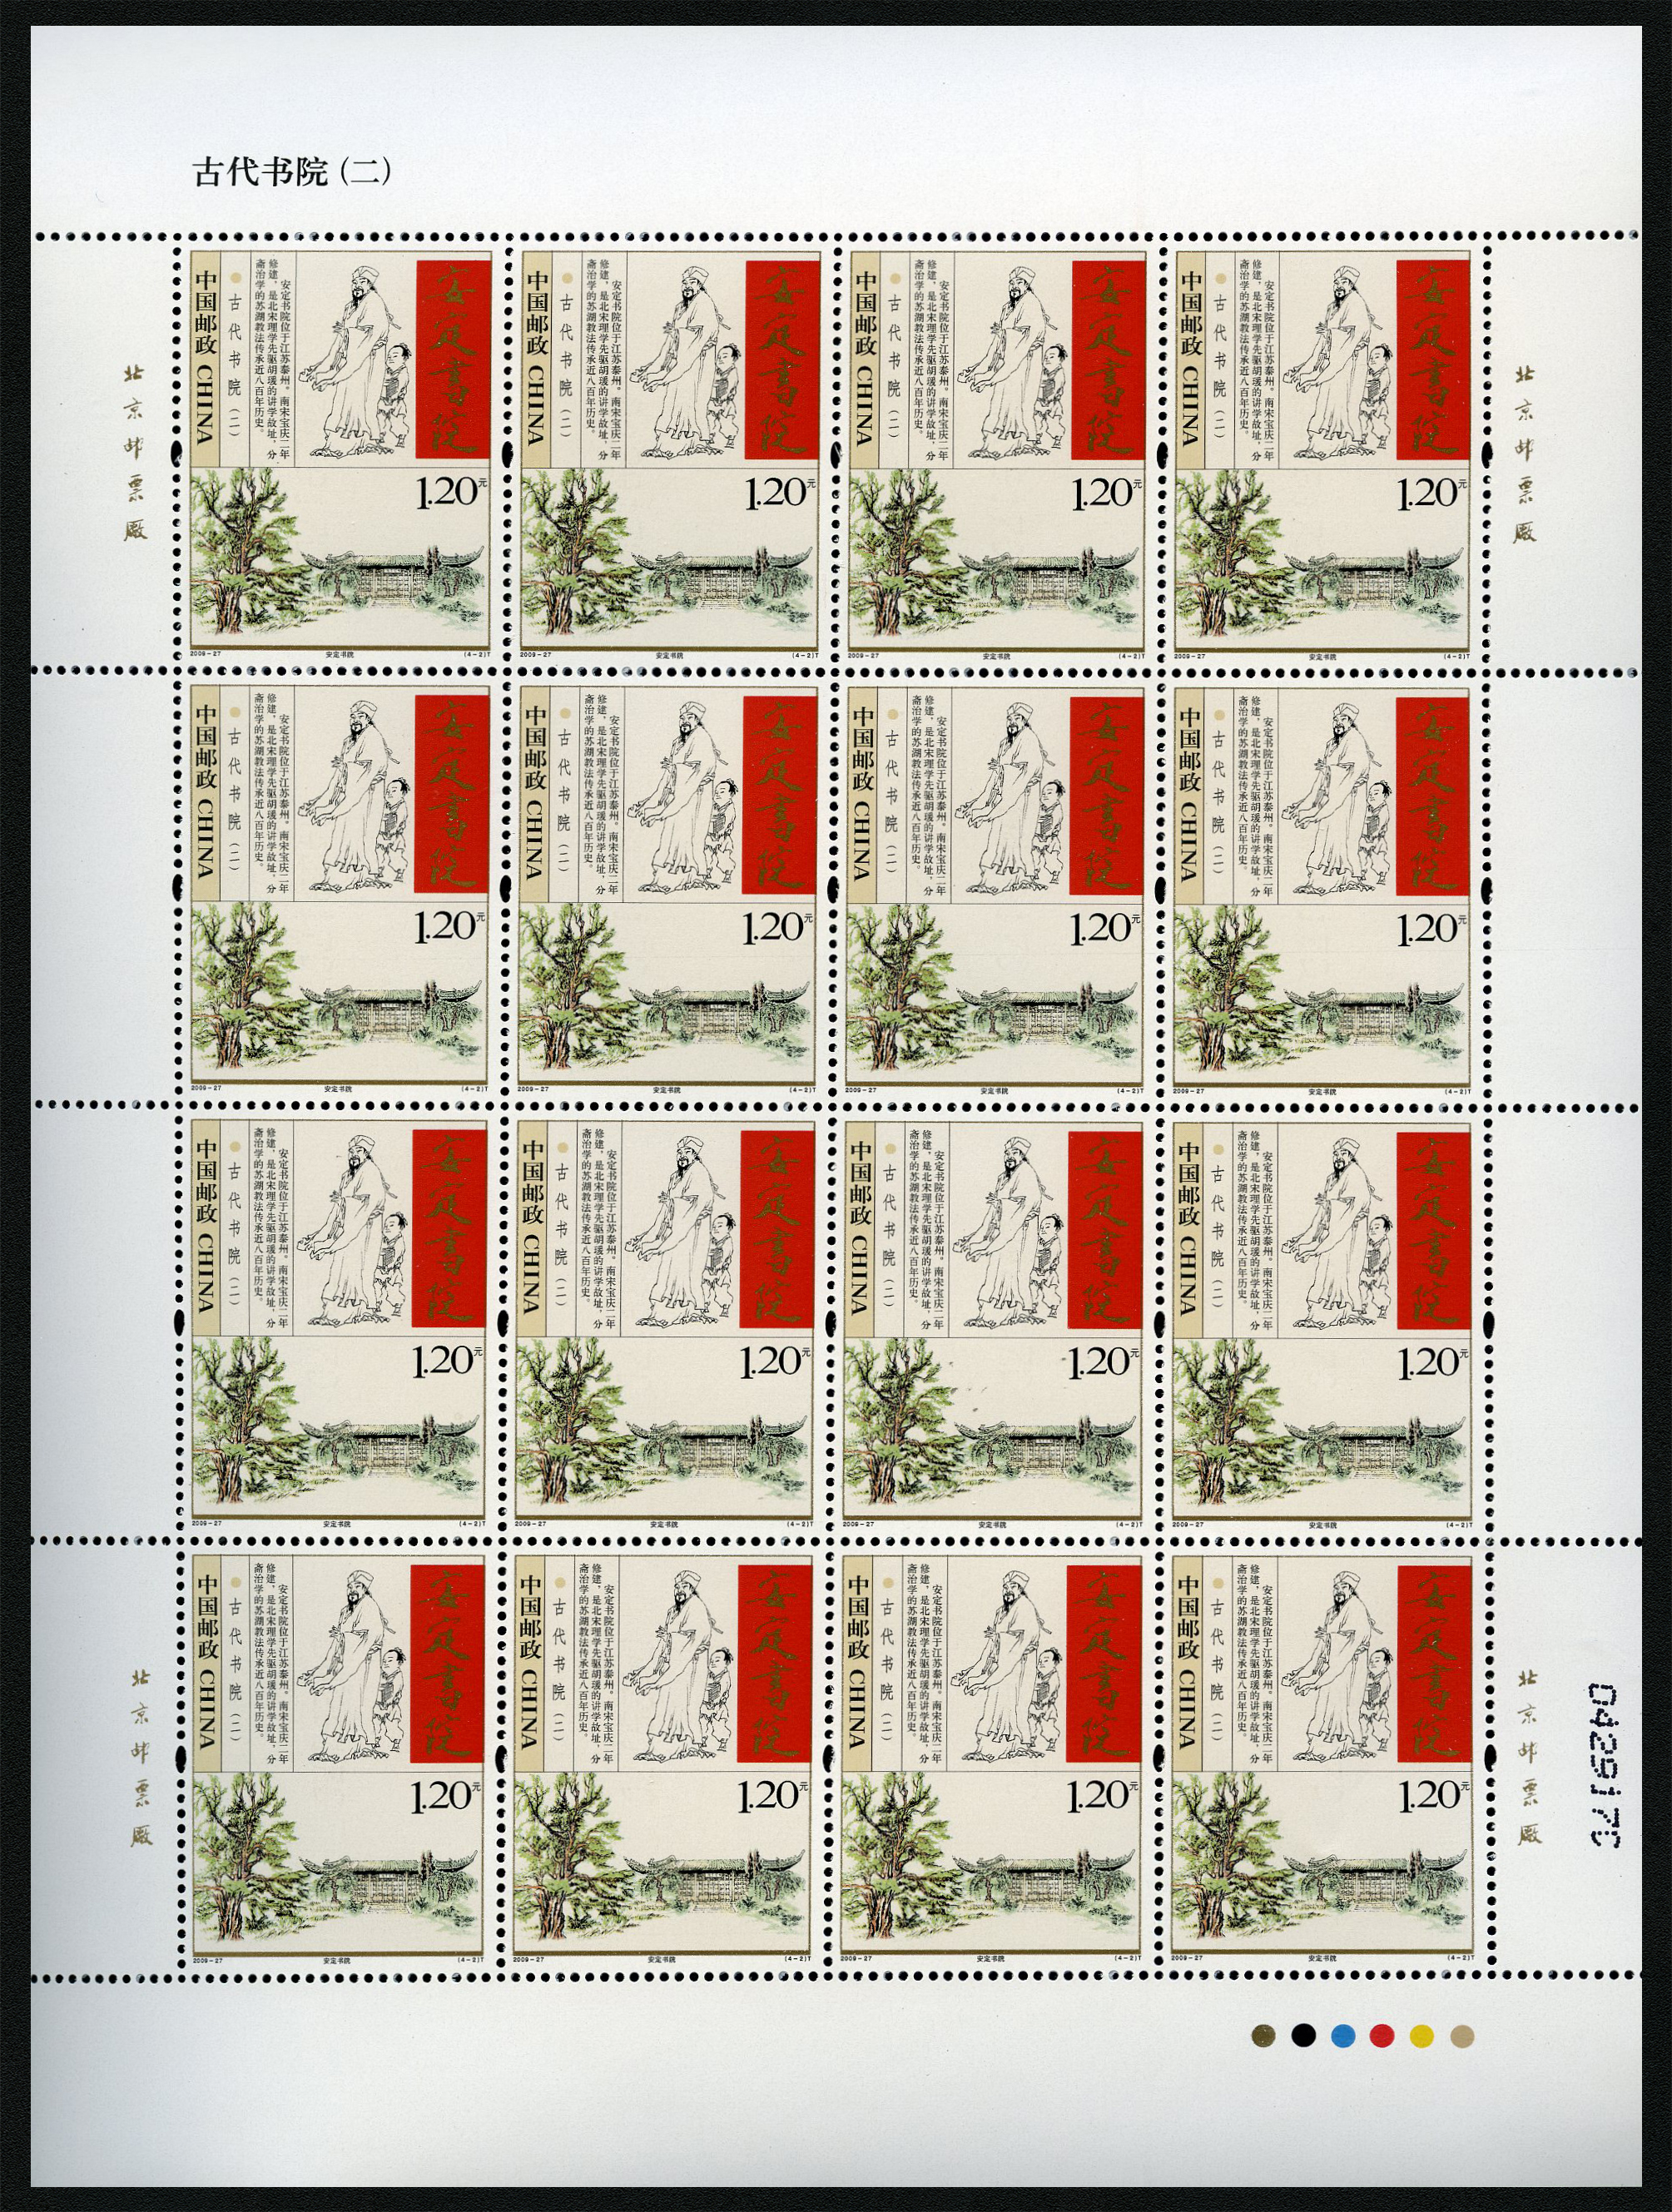 邮票文化(价值十万元以上邮票)